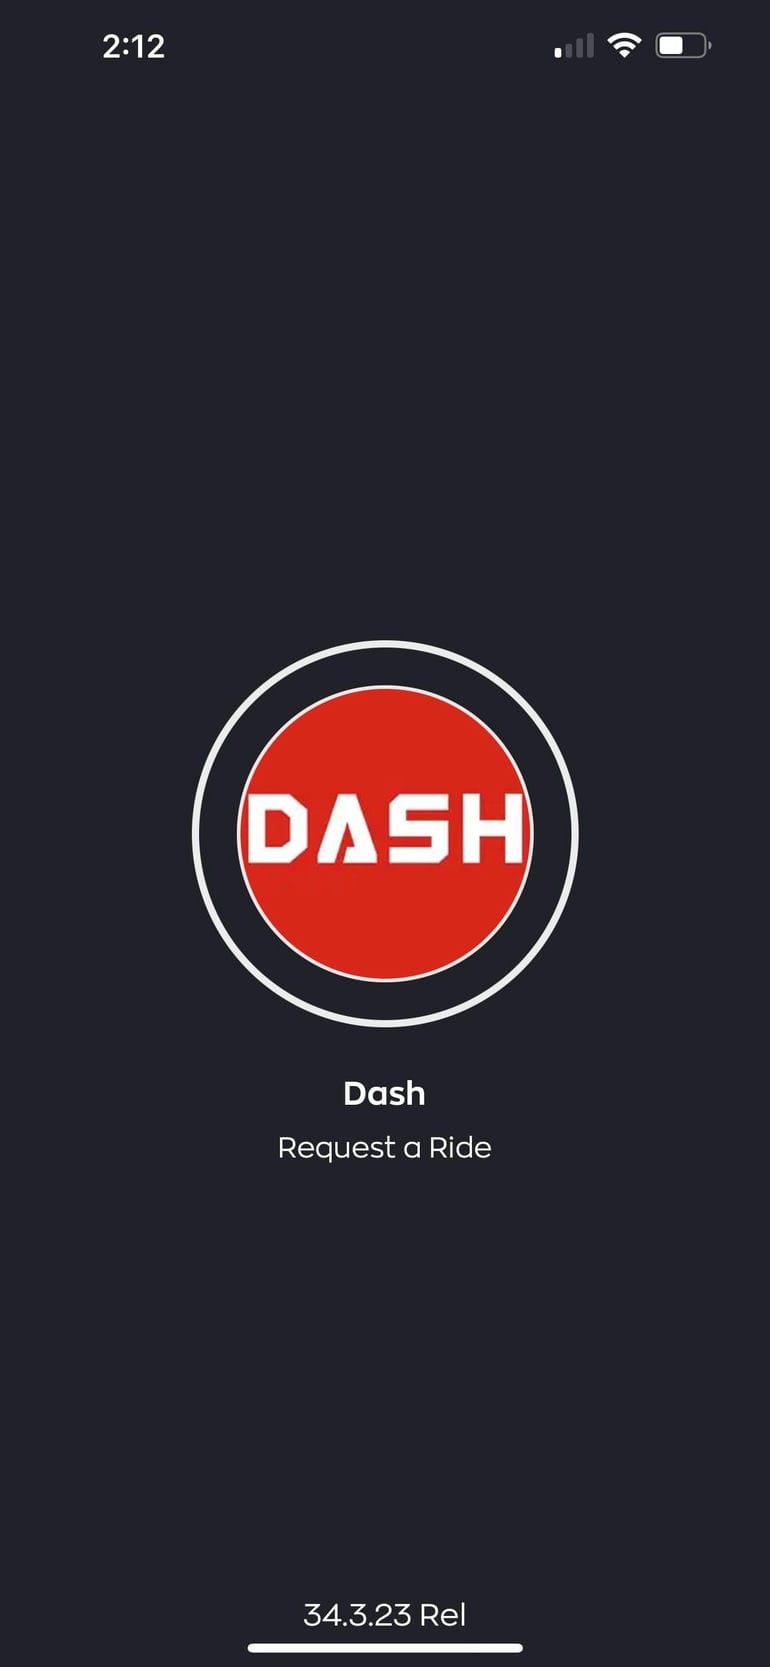  Dash Taxis App step 1